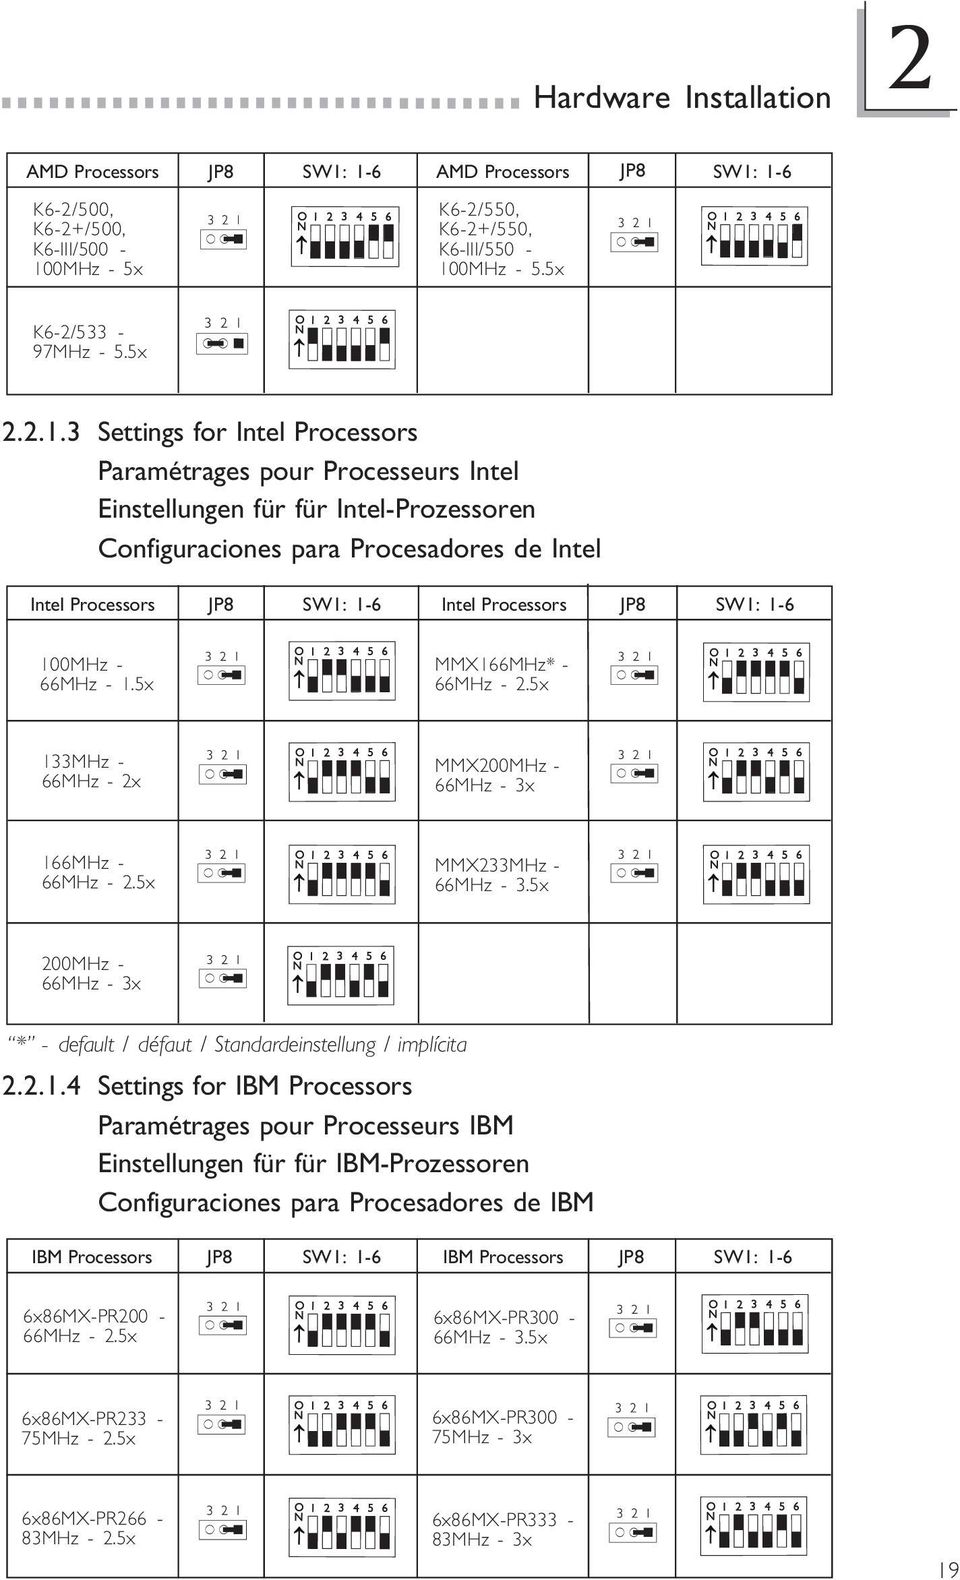 Intel Einstellungen für für Intel-Prozessoren Configuraciones para Procesadores de Intel Intel Processors JP8 SW1: 1-6 Intel Processors JP8 SW1: 1-6 1MHz - 66MHz - 1.5x MMX166MHz* - 66MHz - 2.